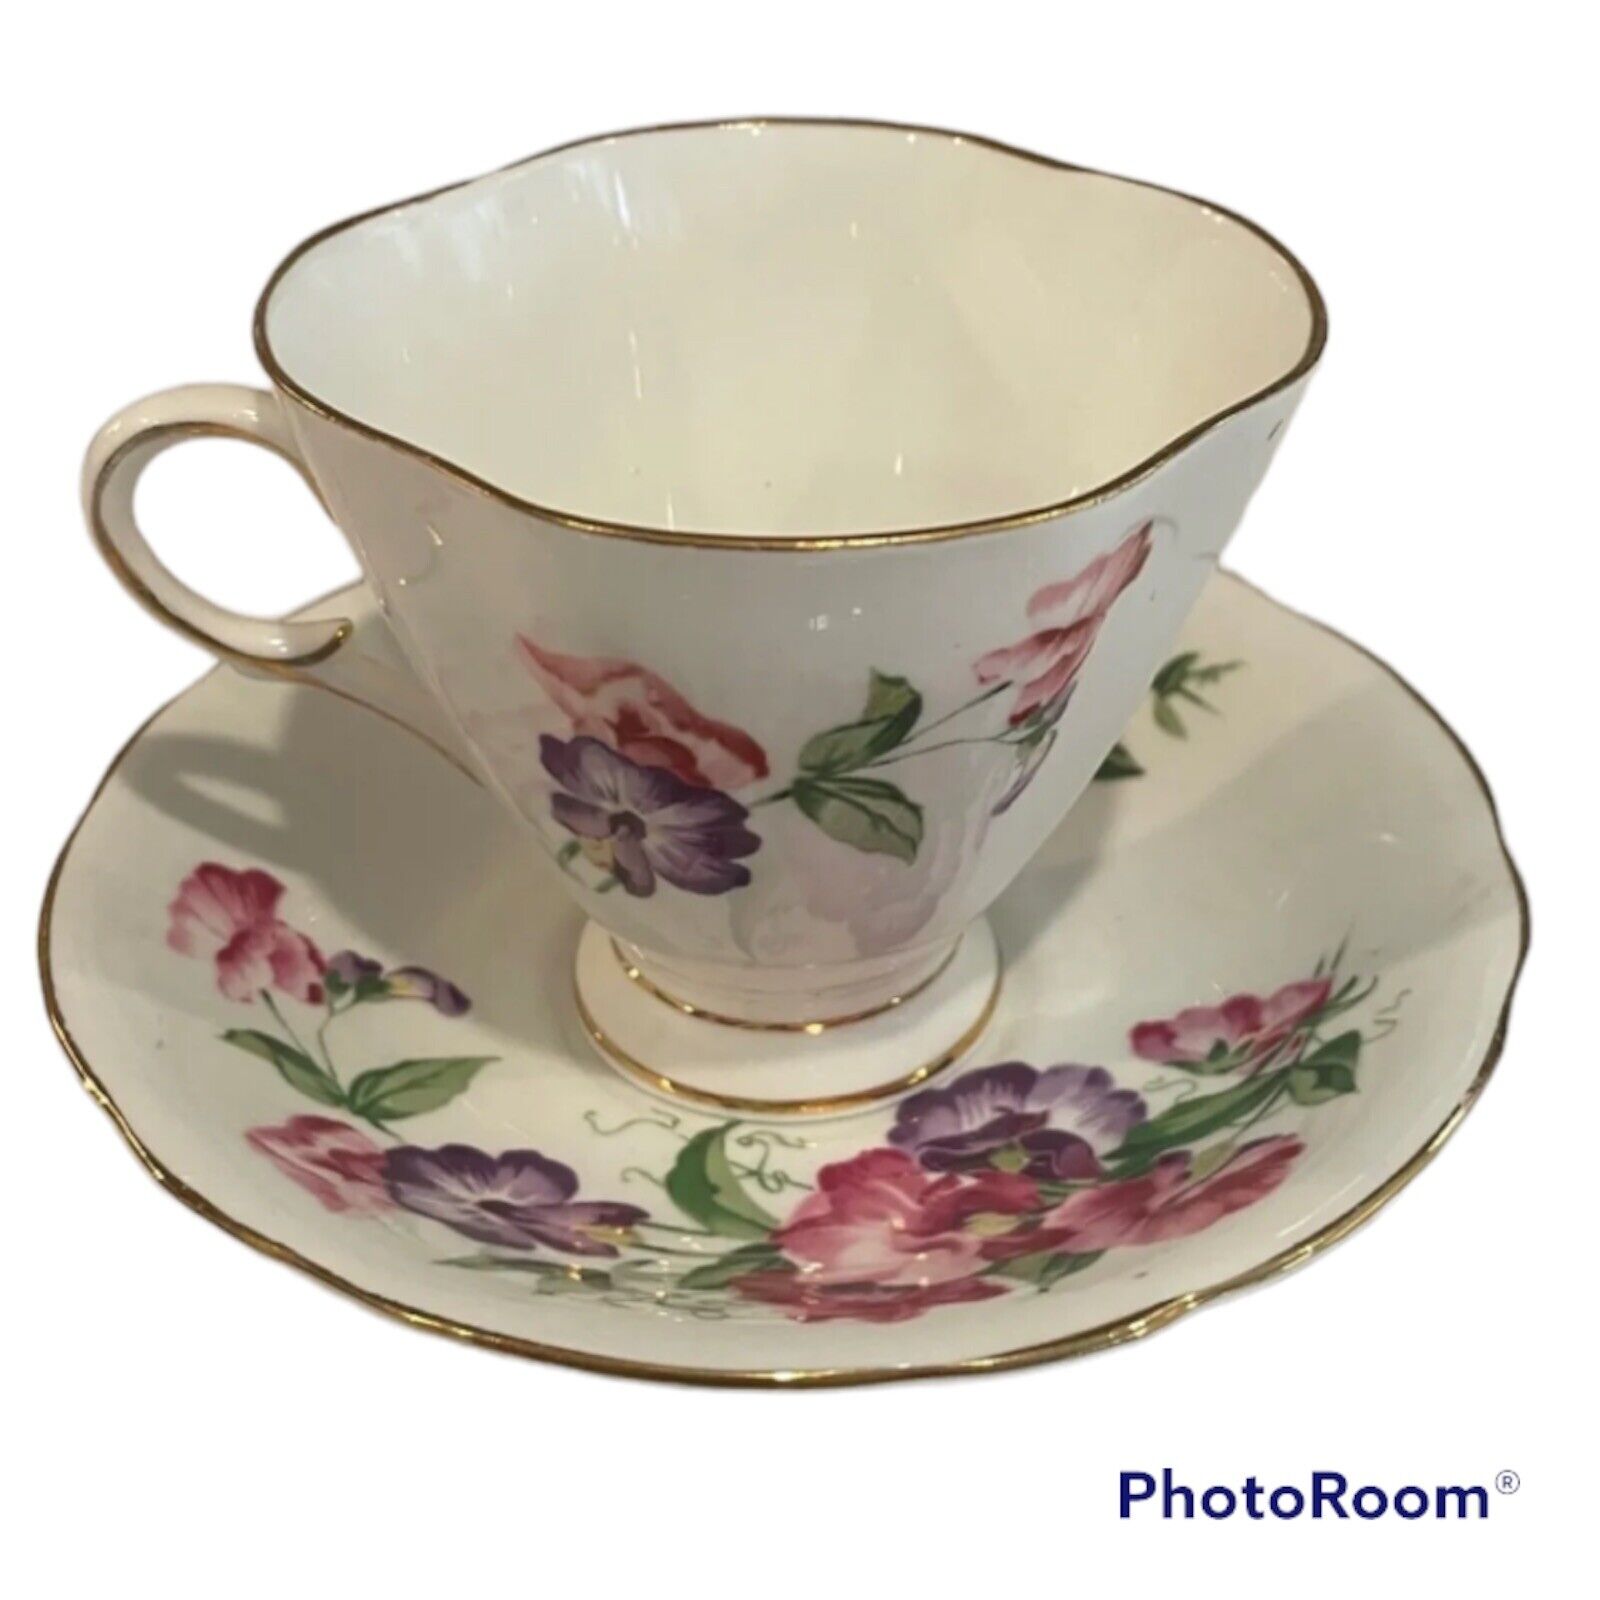 vintage clarence bone china tea set teacup and plate pink floral gold rimmed set